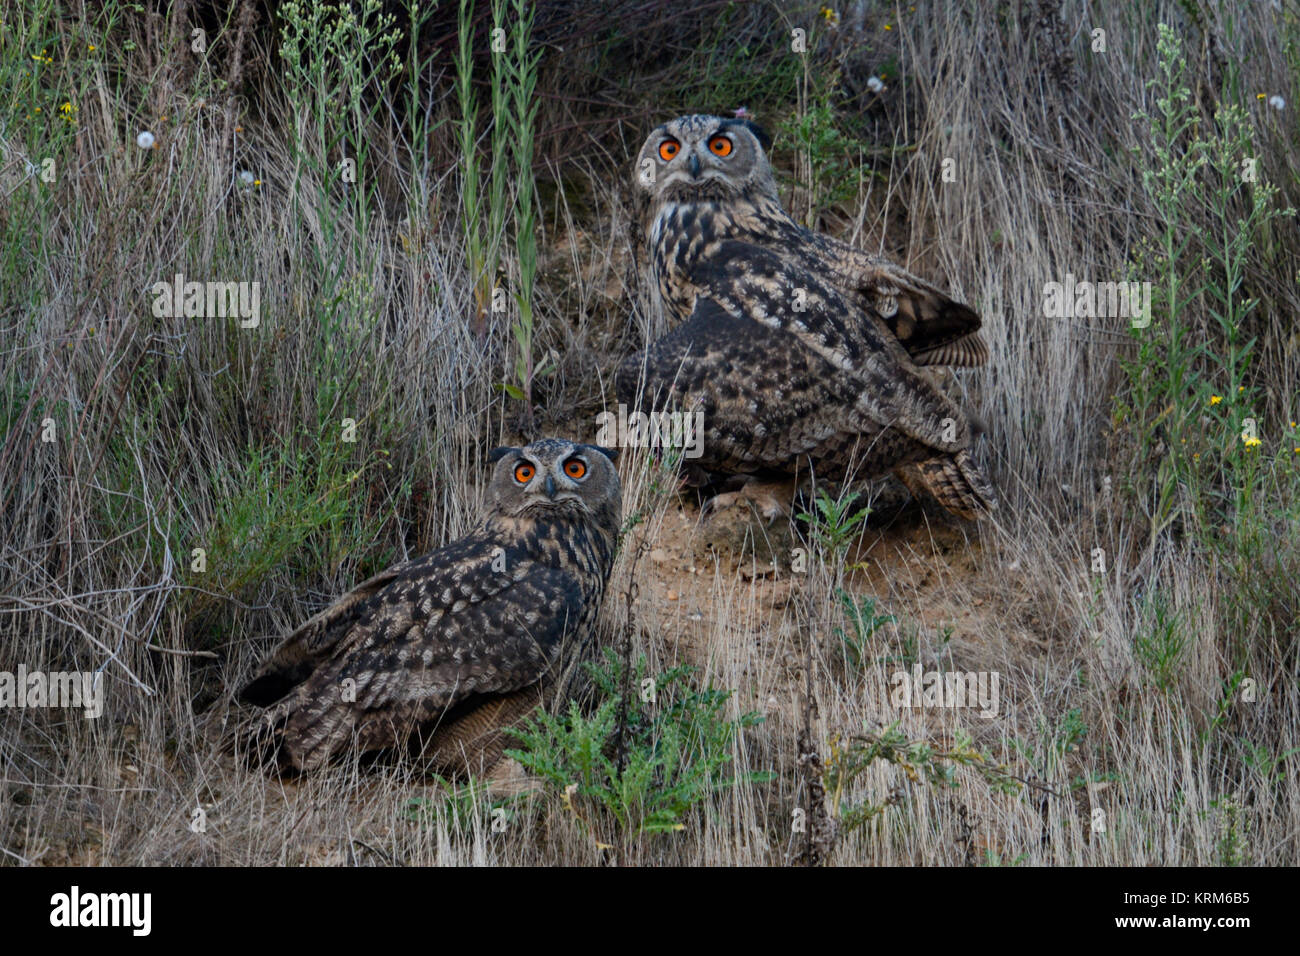 Eagle Owl Bubo bubo / Owls ( ) situé dans la pente d'une gravière, au crépuscule, Nightfall, regarder, yeux orange vif intensive, de la faune, de l'Europe. Banque D'Images